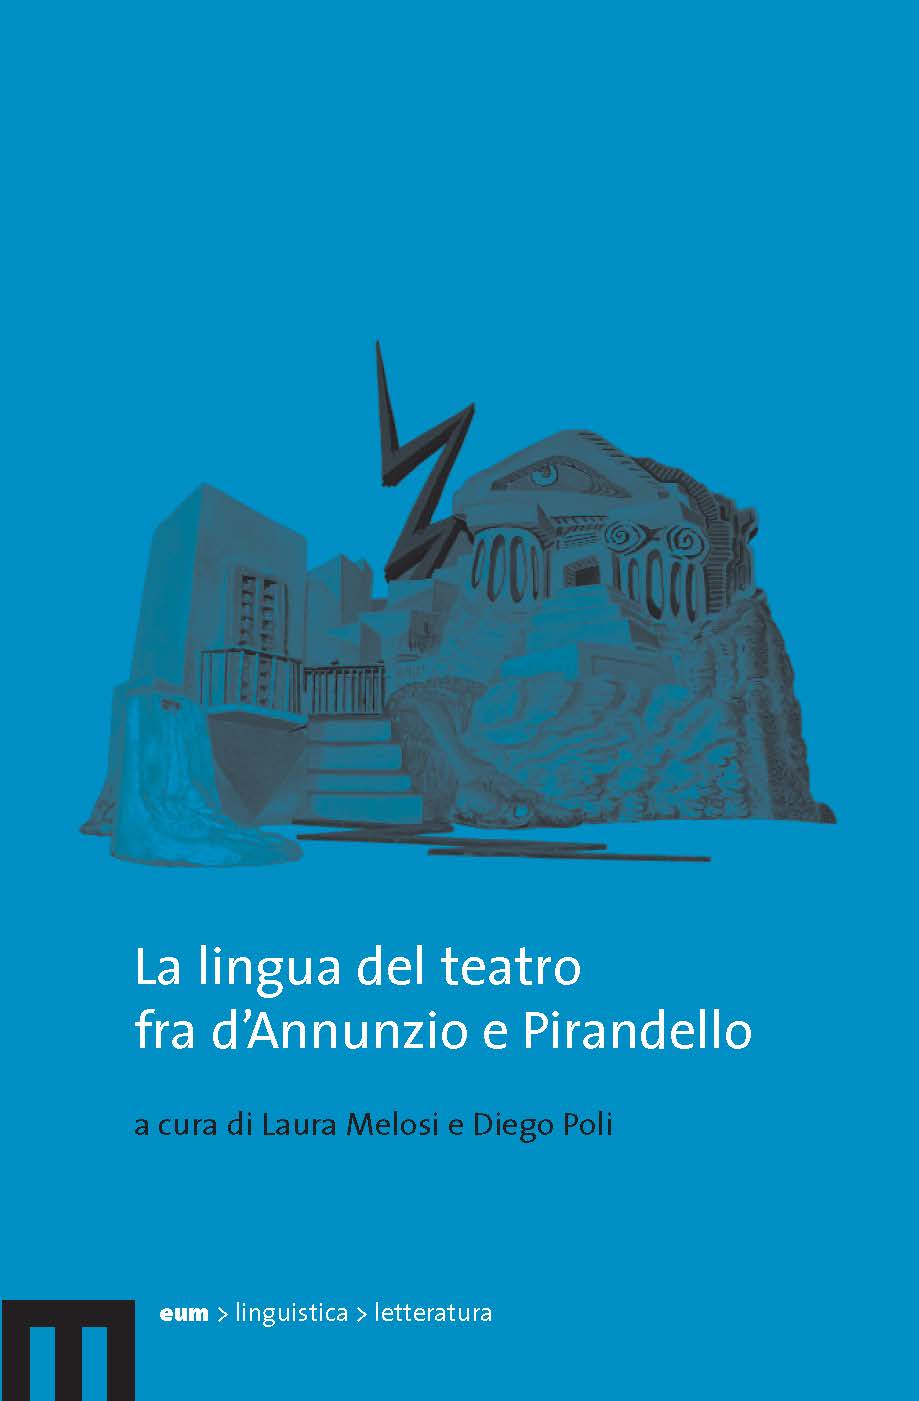 La lingua del teatro fra d’Annunzio e Pirandello